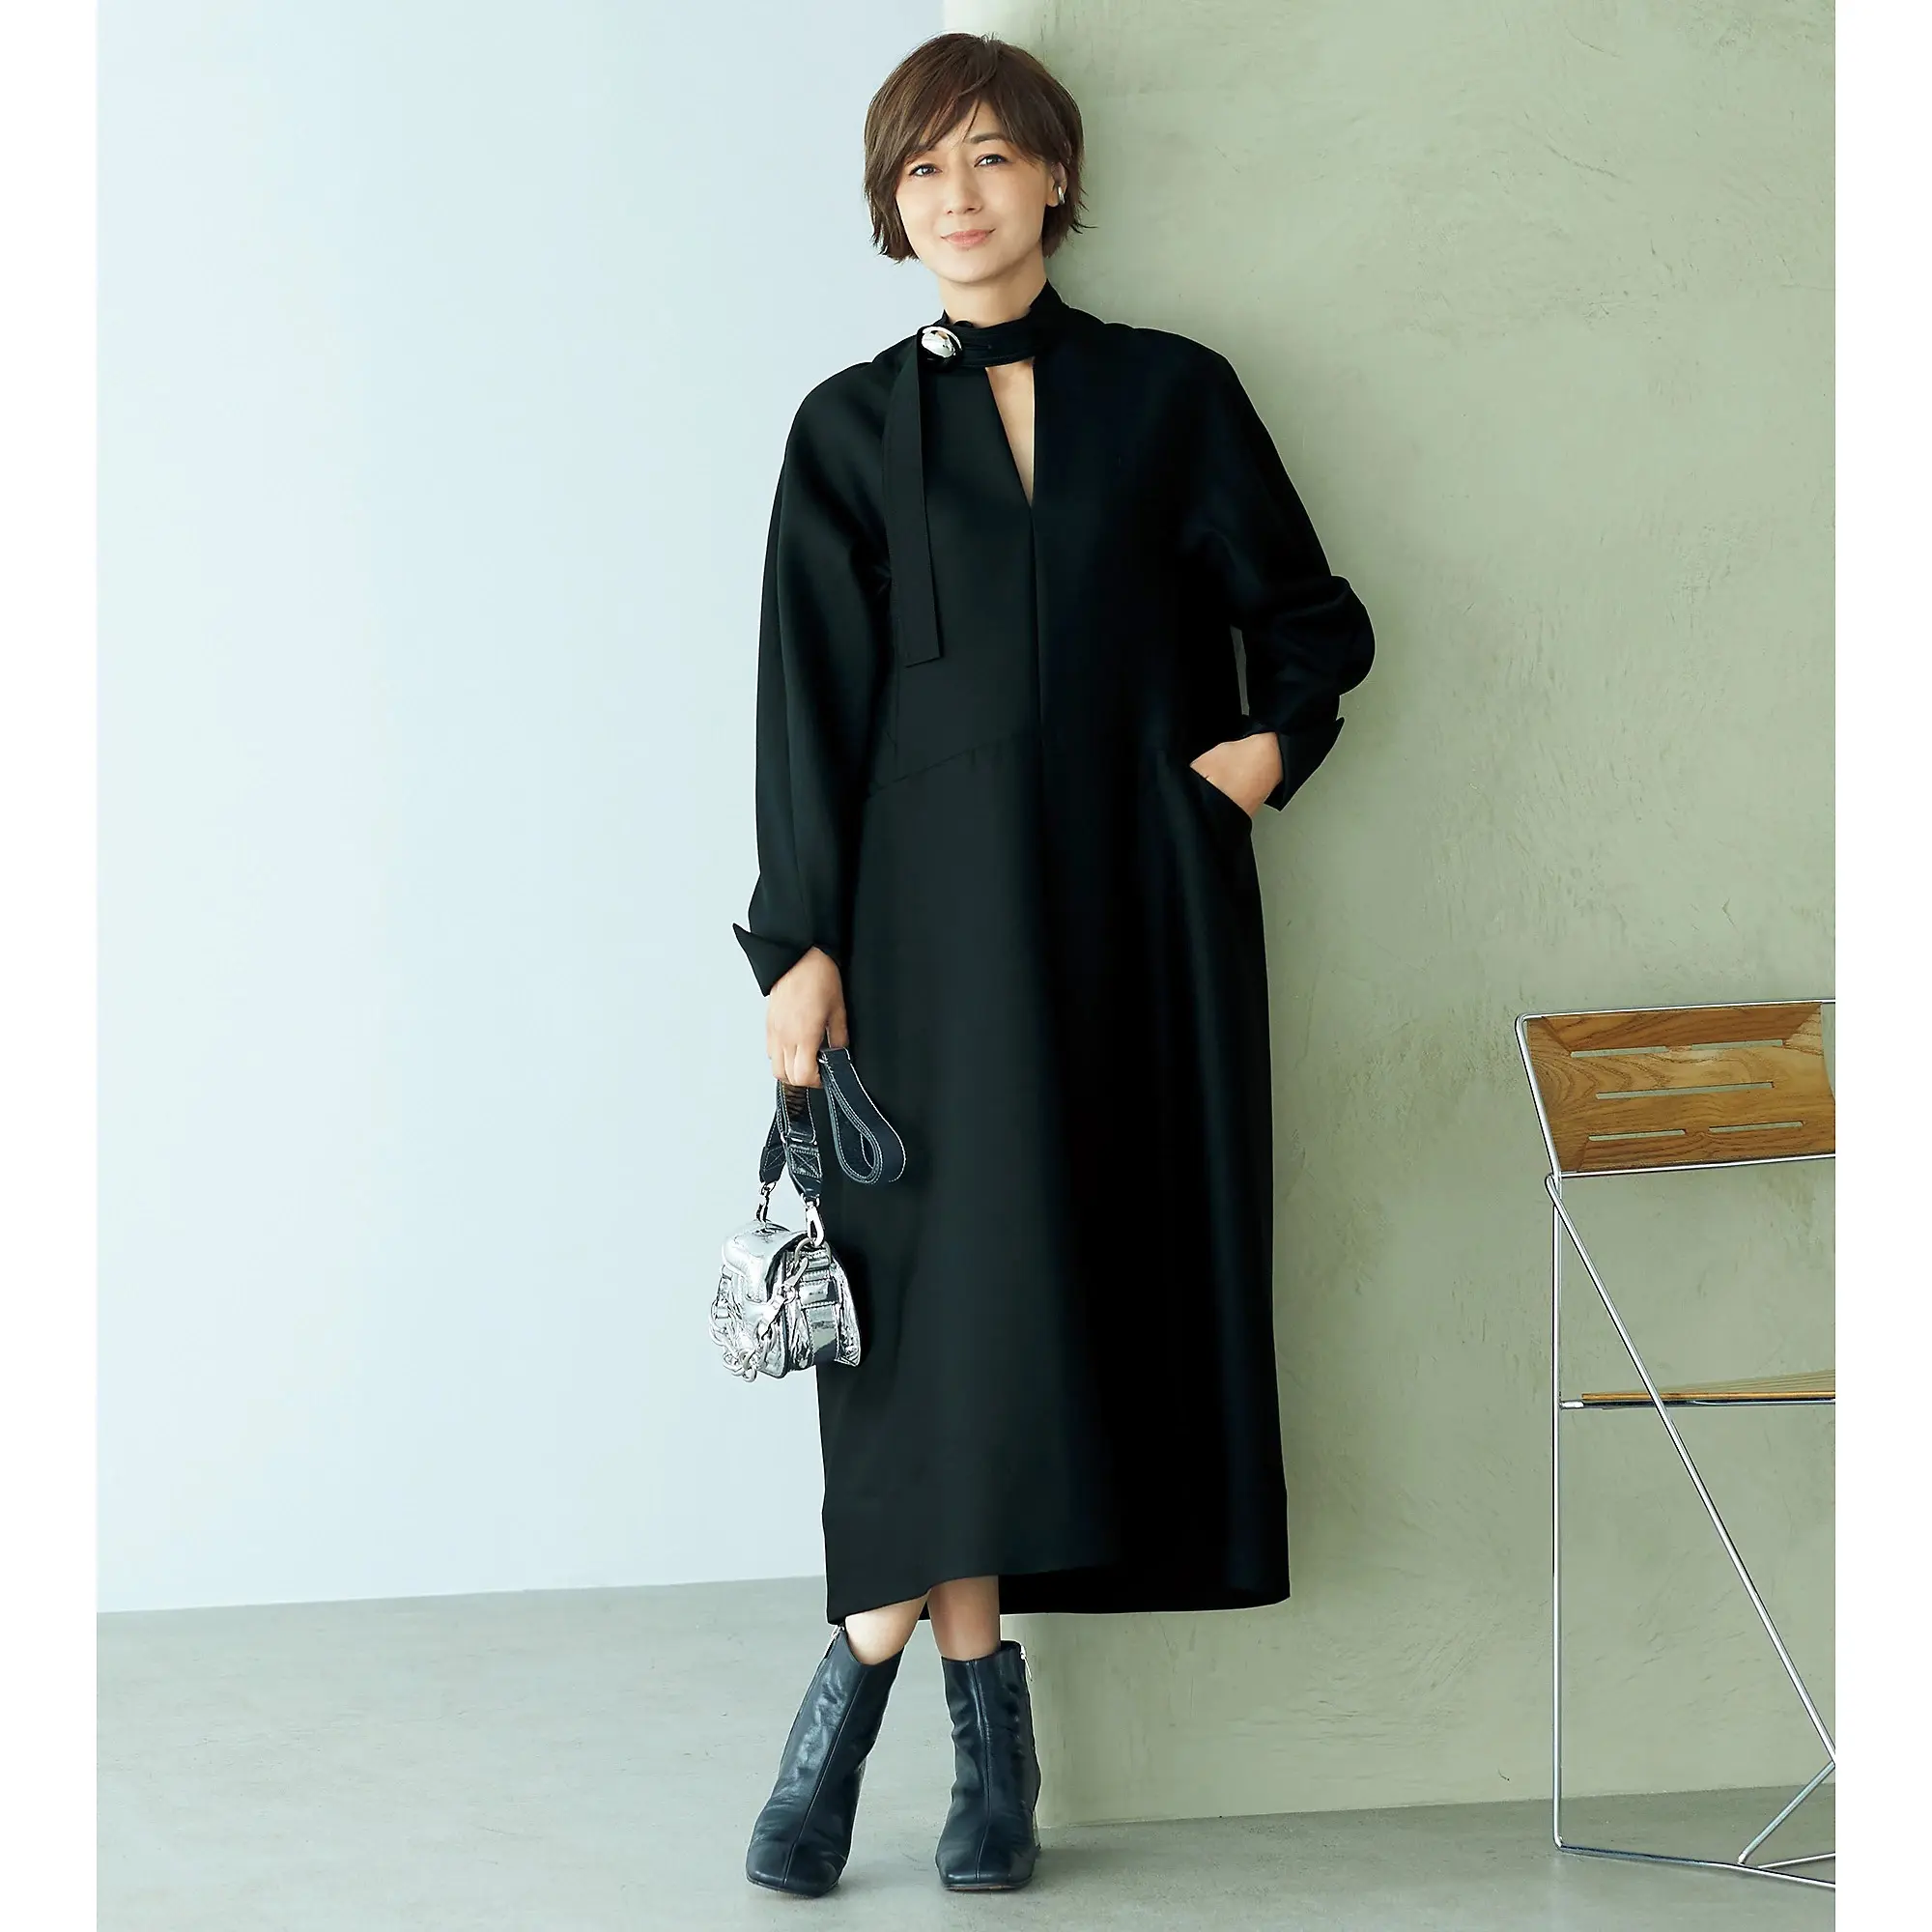 富岡佳子さんが着こなす“優雅な黒アイテム”「HARUNOBUMURATA」のボタンワンピース_1_1